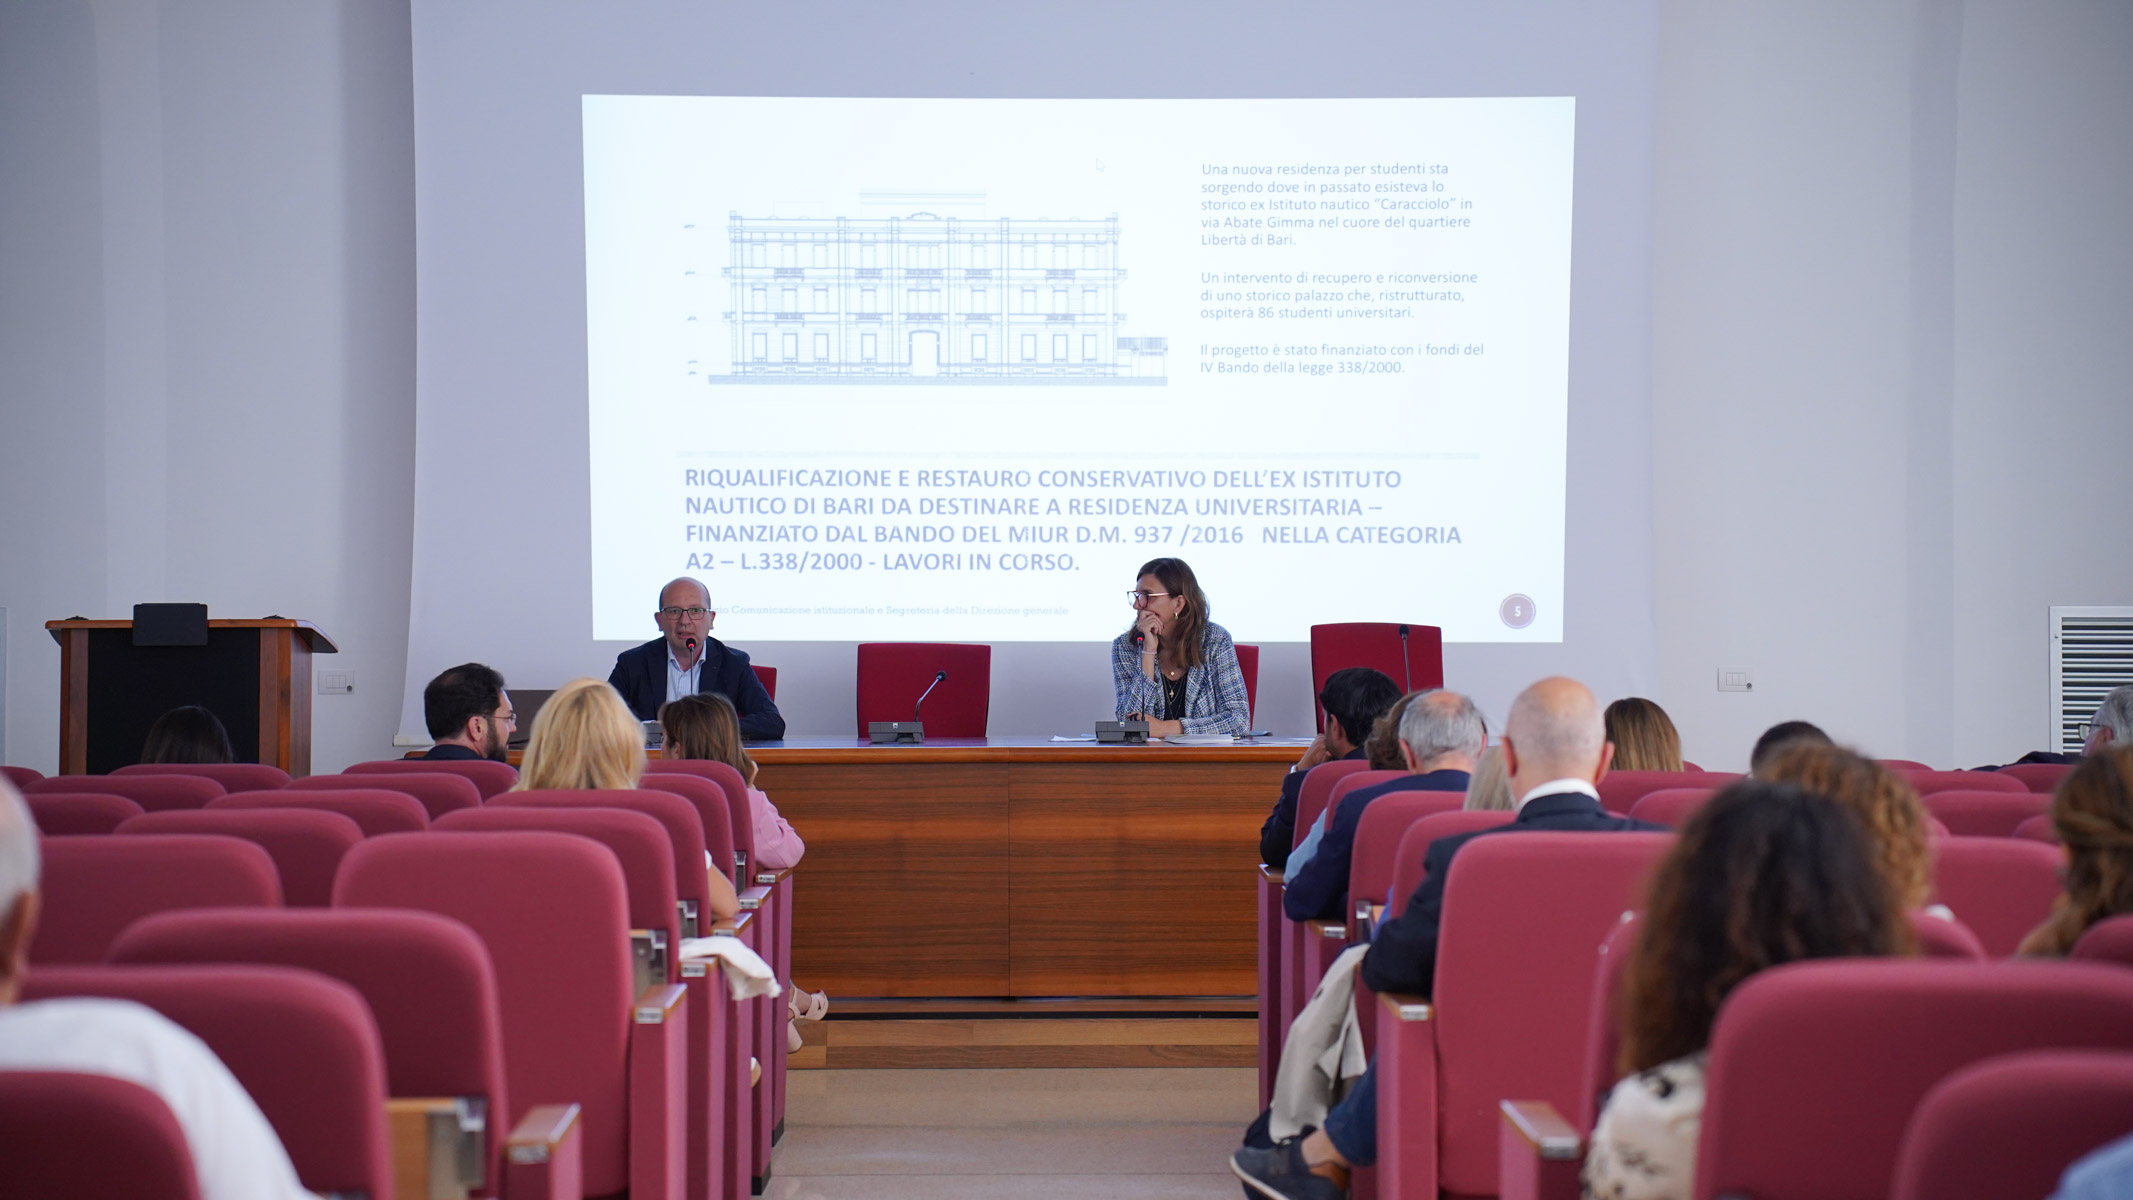 Galleria L’assessore Leo “Il presente e il futuro del diritto allo studio per una Puglia Regione Universitaria” - Diapositiva 5 di 13